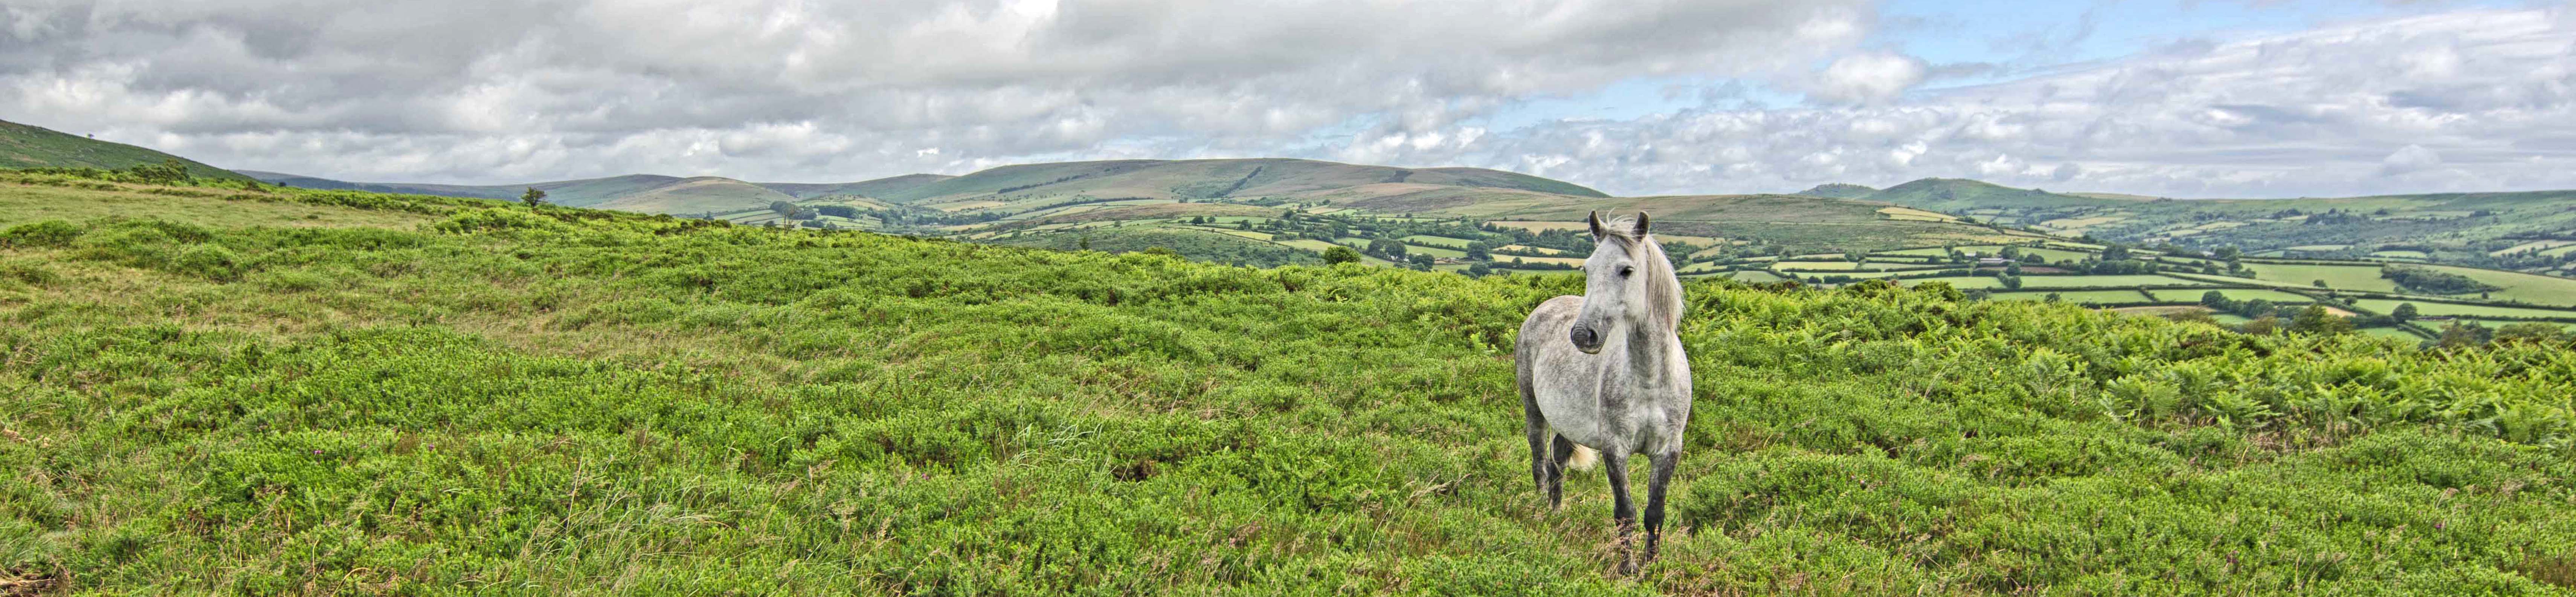 A Wild Dartmoor Pony